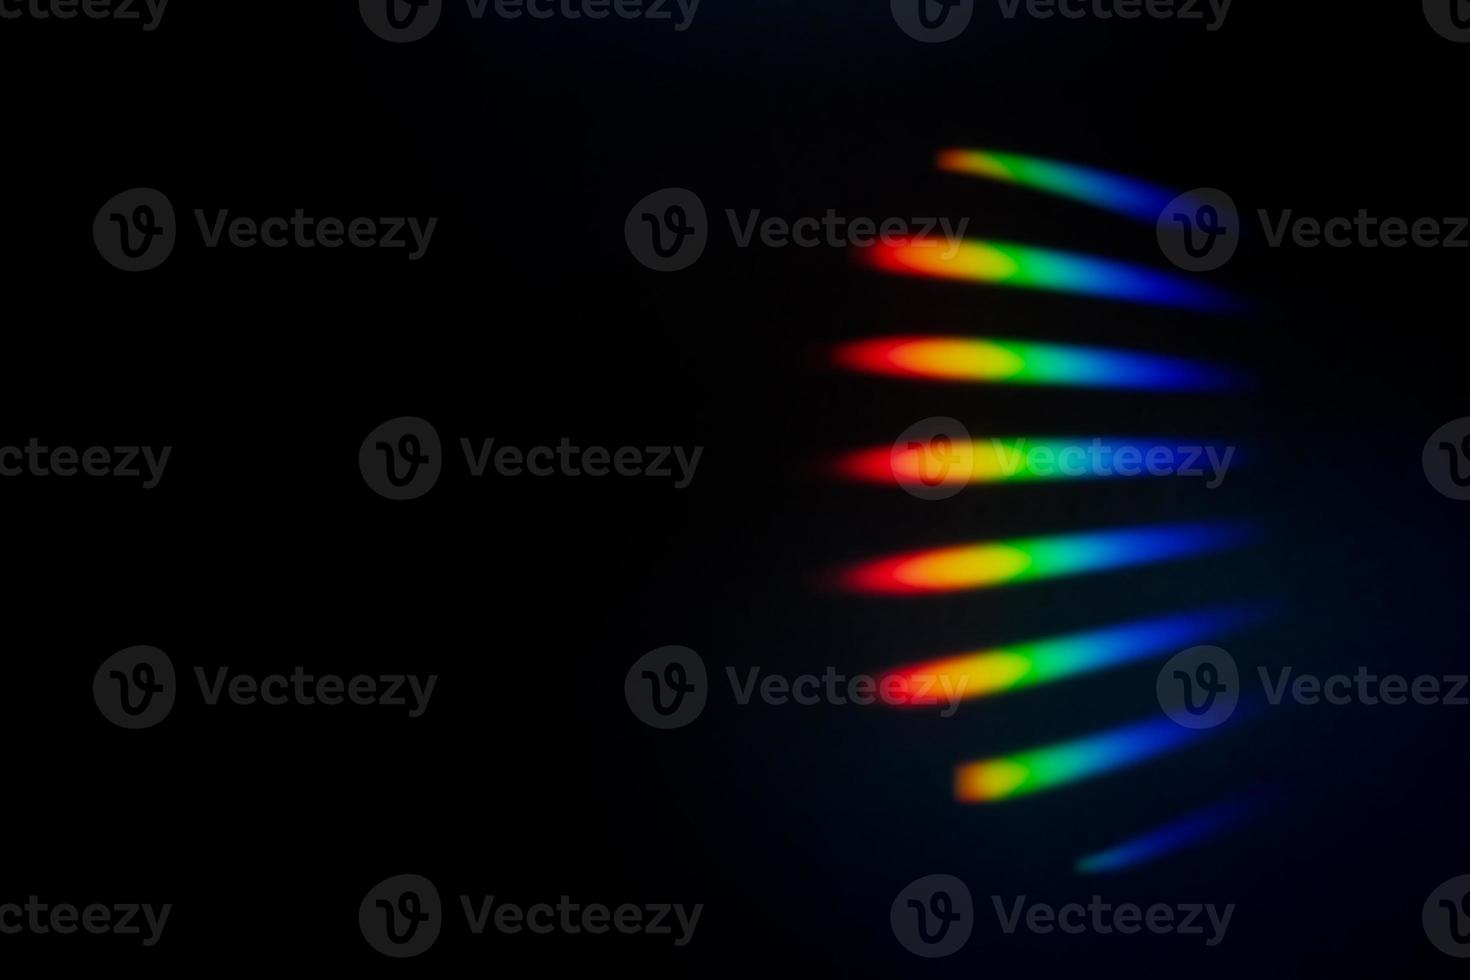 prisma arco iris especificaciones en negro antecedentes cubrir foto